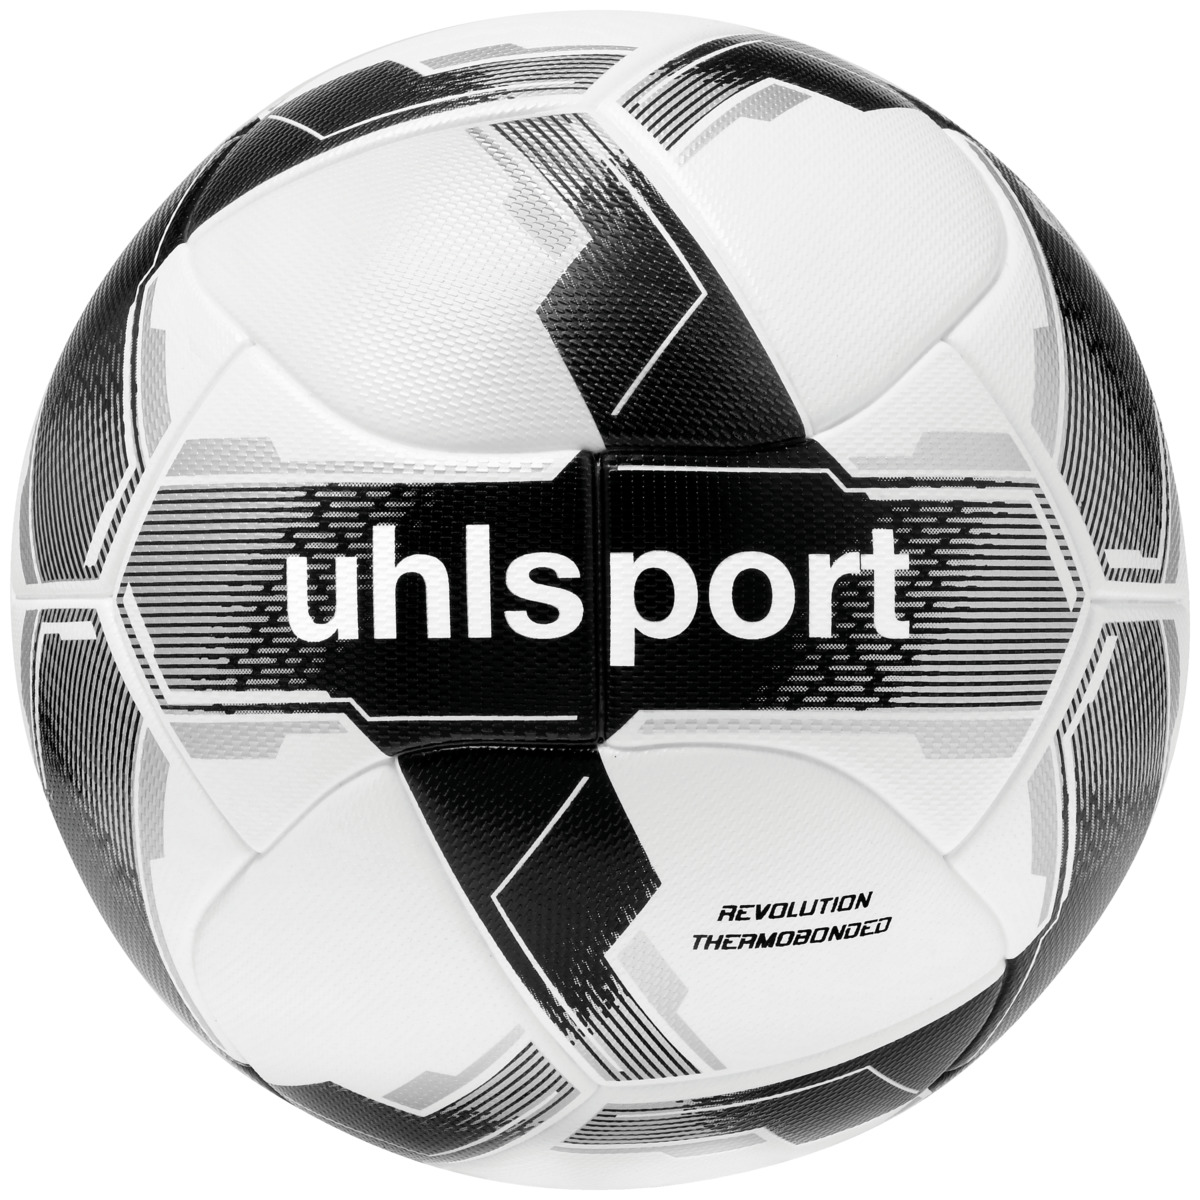 kubus salon Afname uhlsport Fußbälle für Spiel & Training | im uhlsport Online Shop